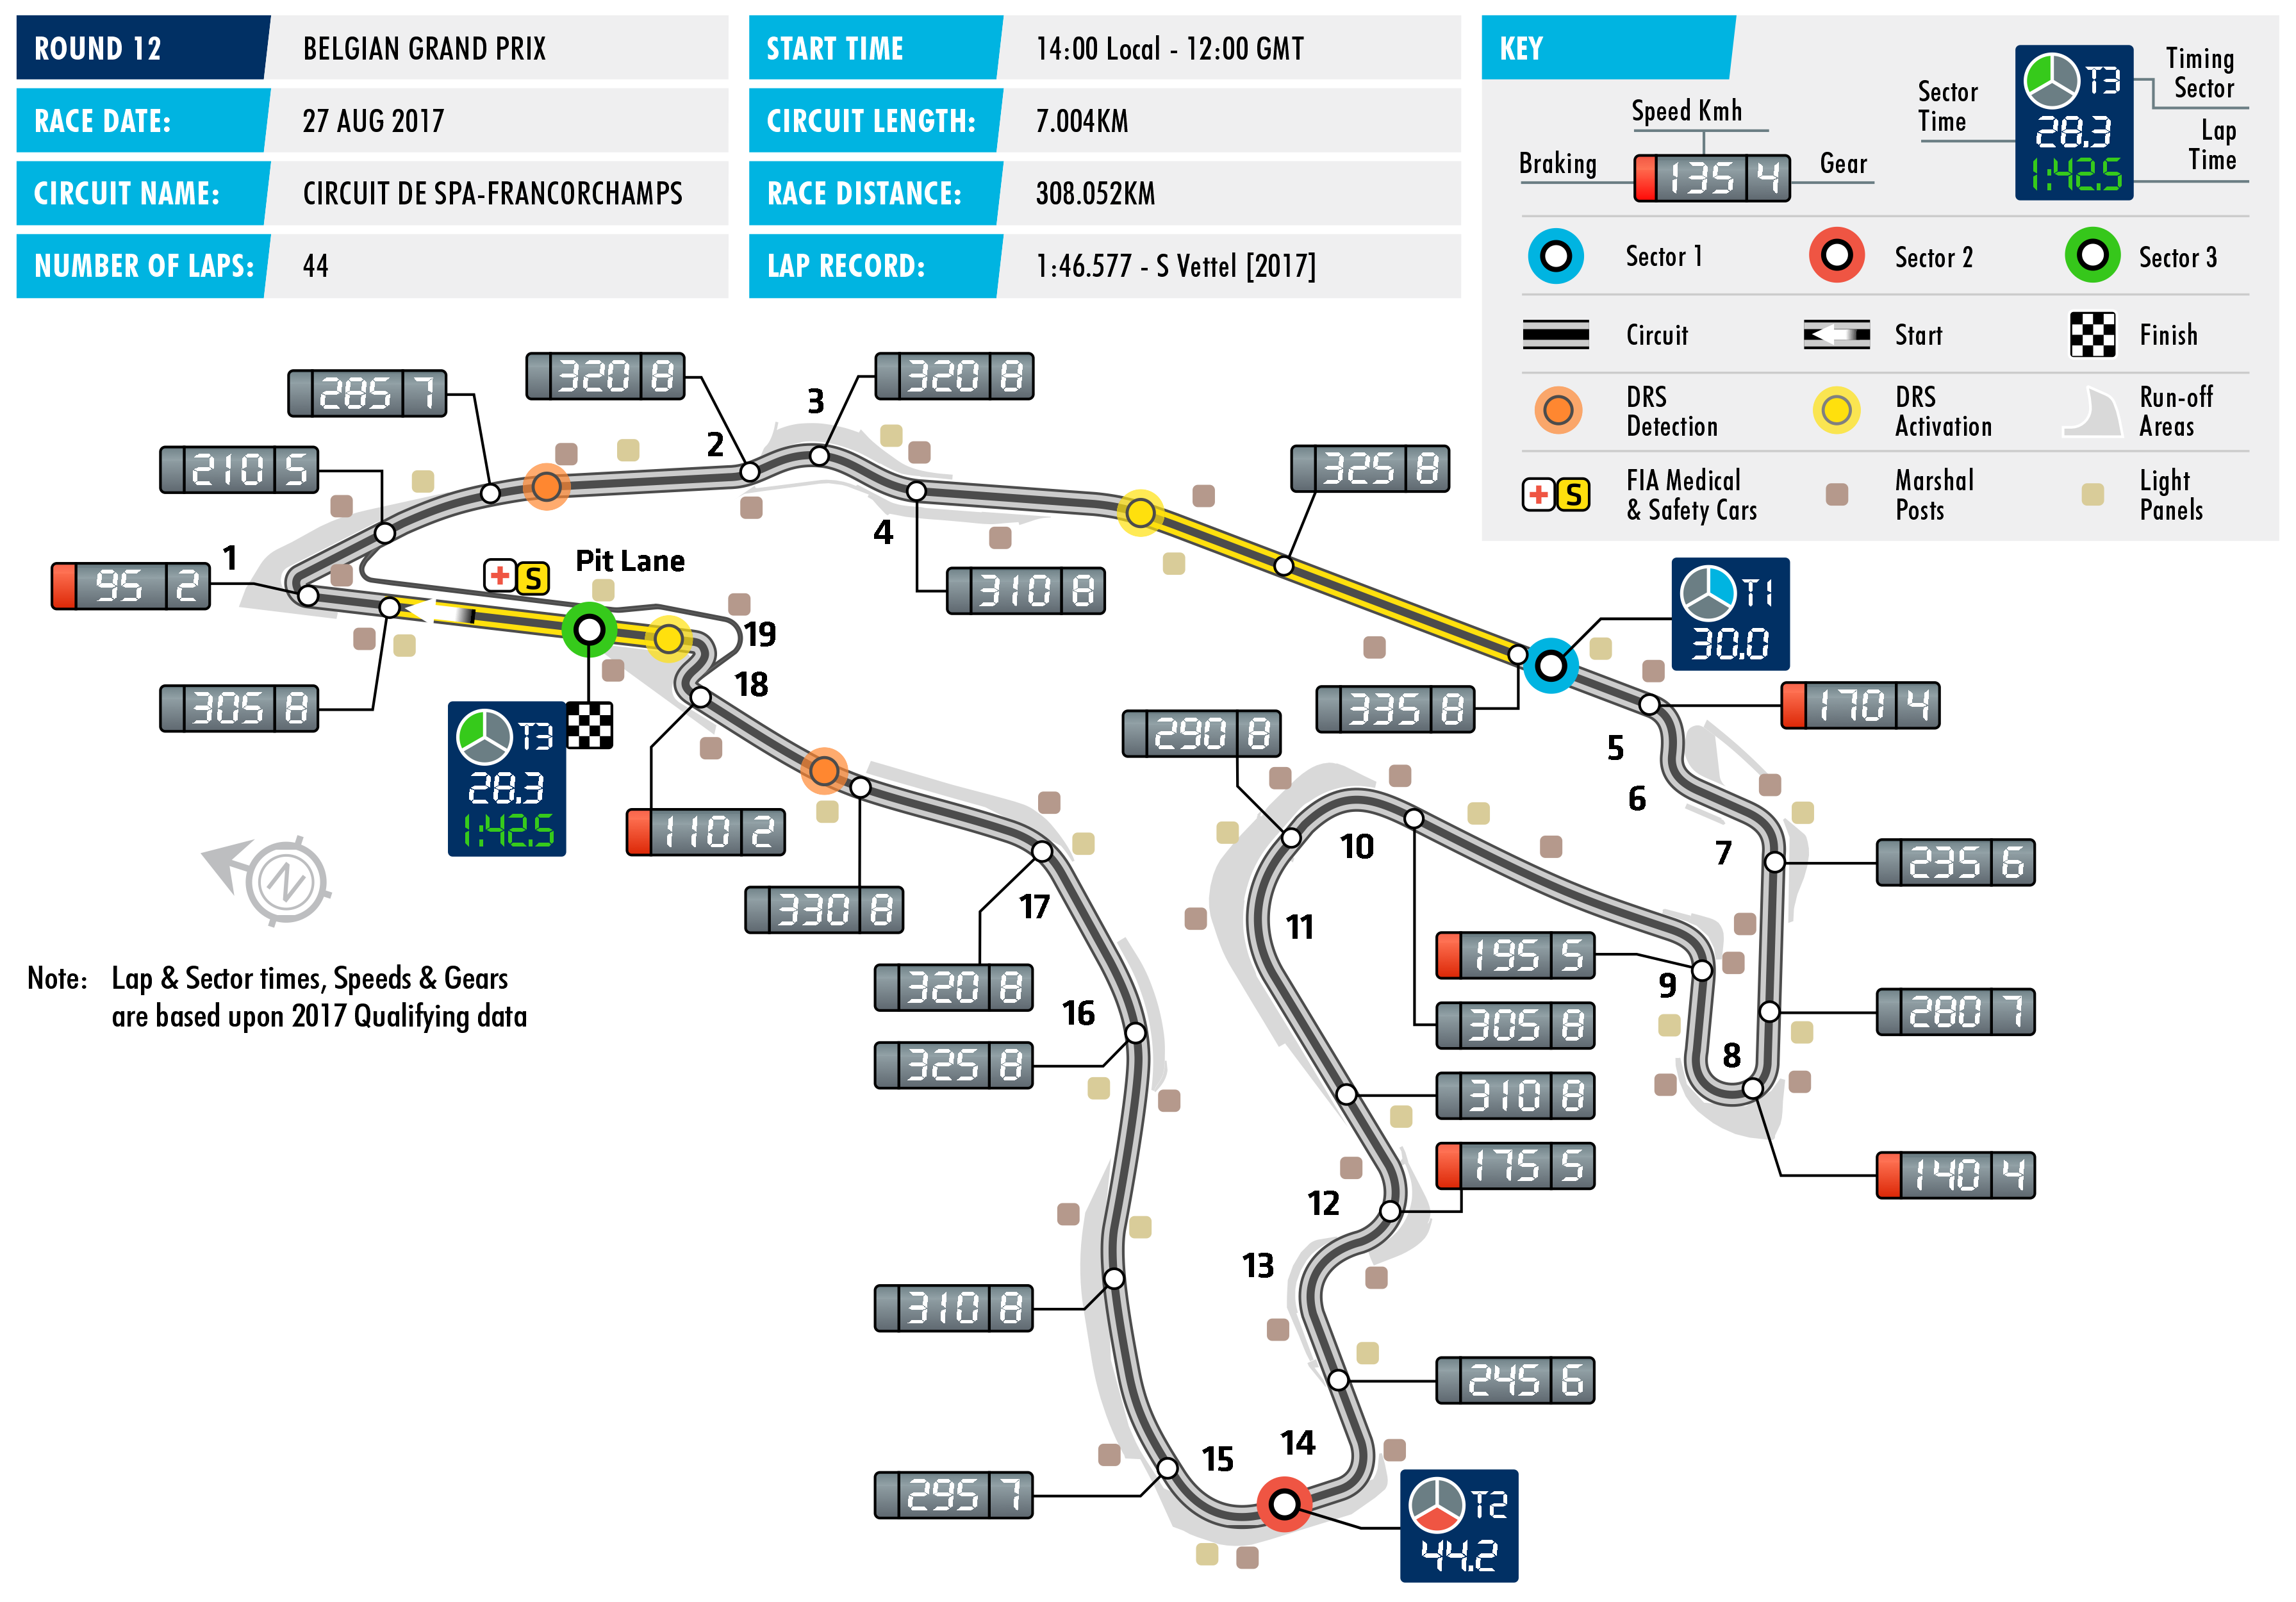 2017 Belgian Grand Prix - Circuit Map